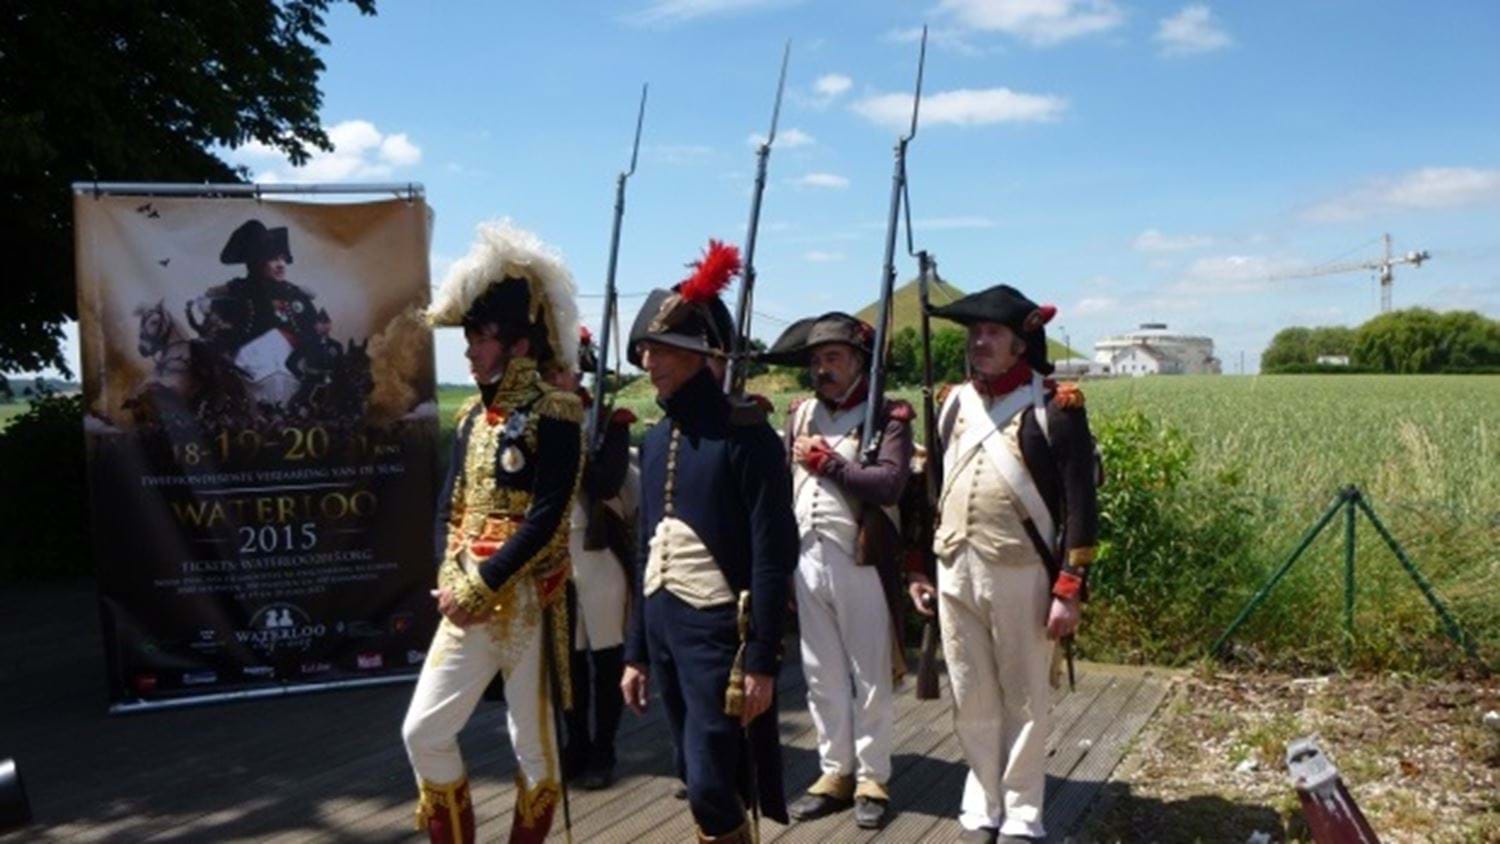 Napoleons leger weer even terug in Waterloo